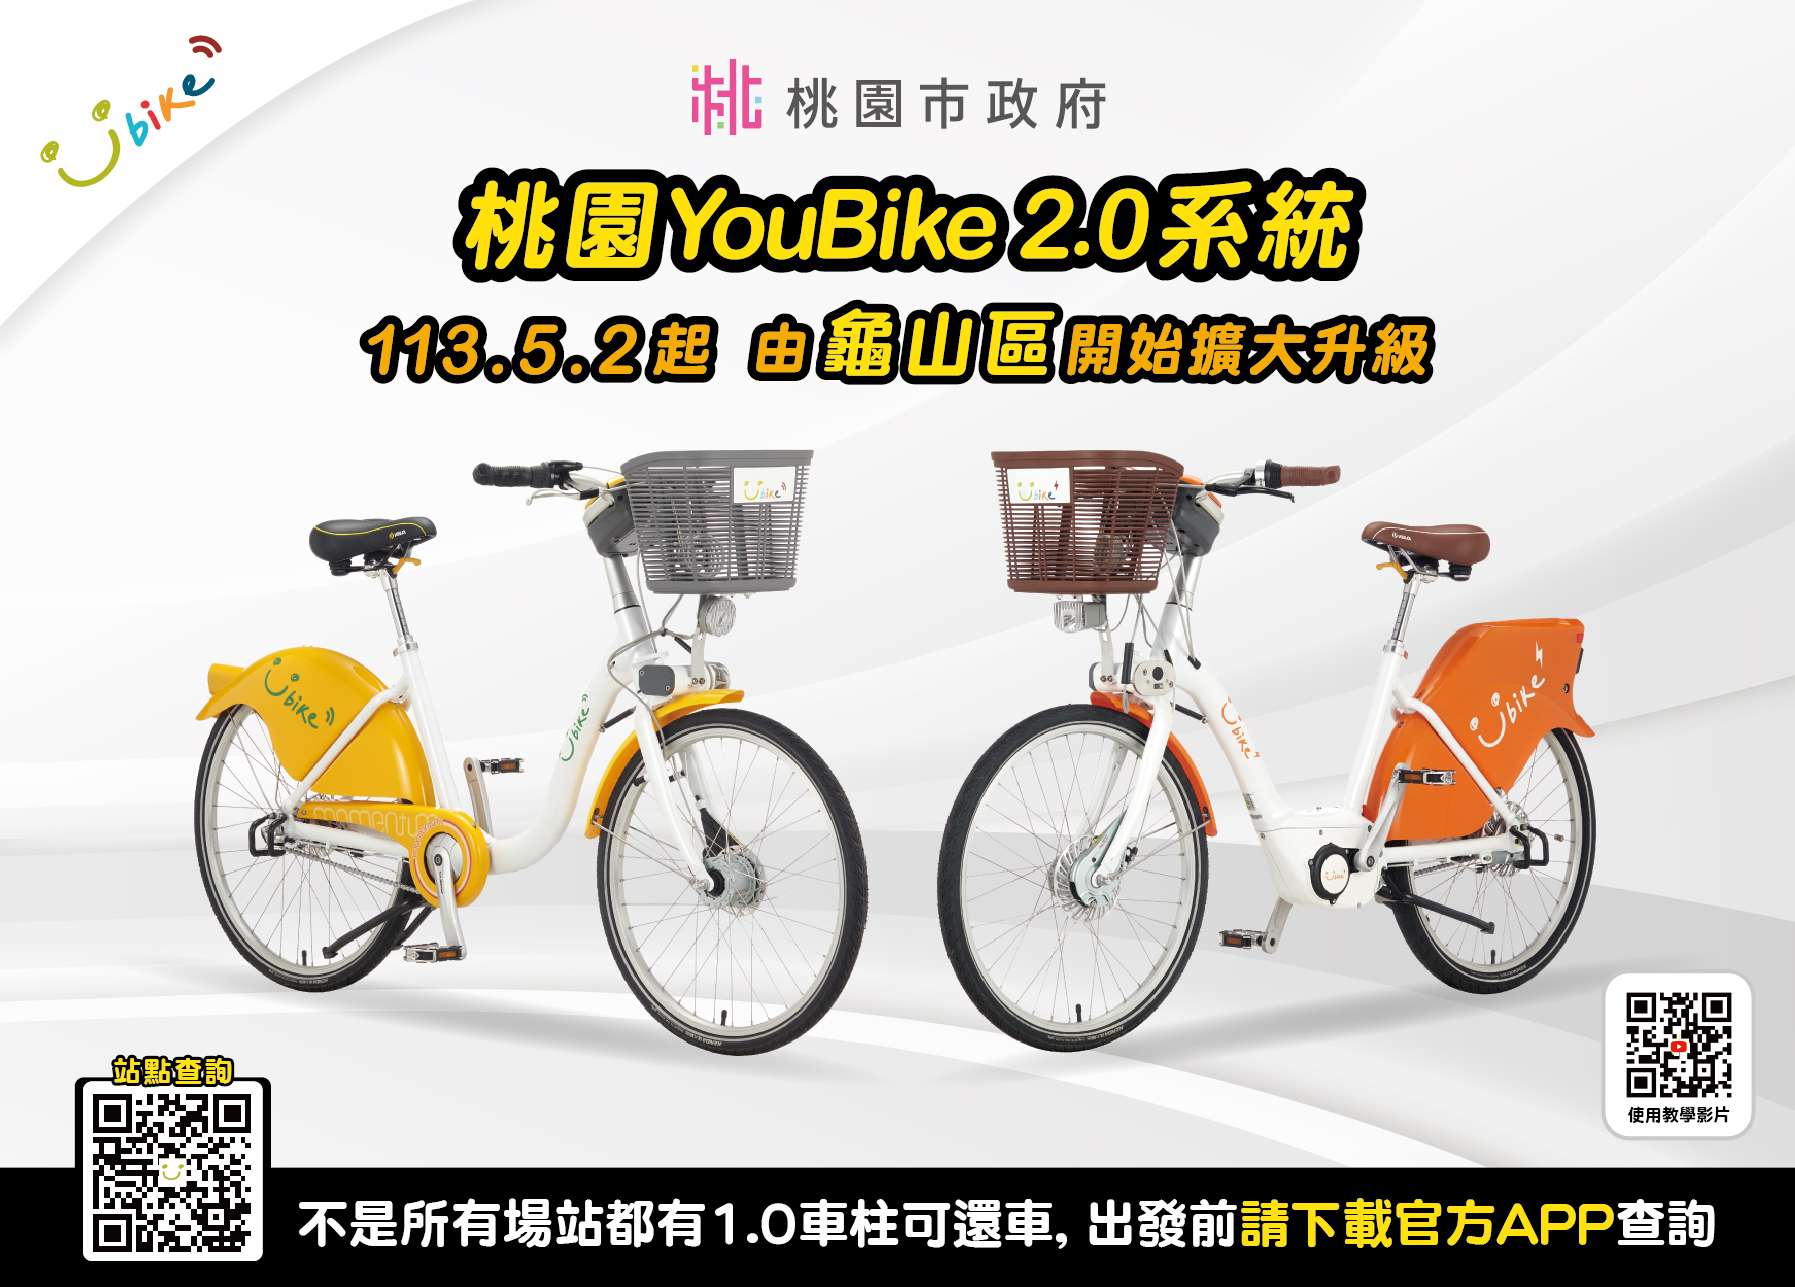 桃園公共自行車系統拆轉工程進度提前 預計10月全數升級YouBike2.0